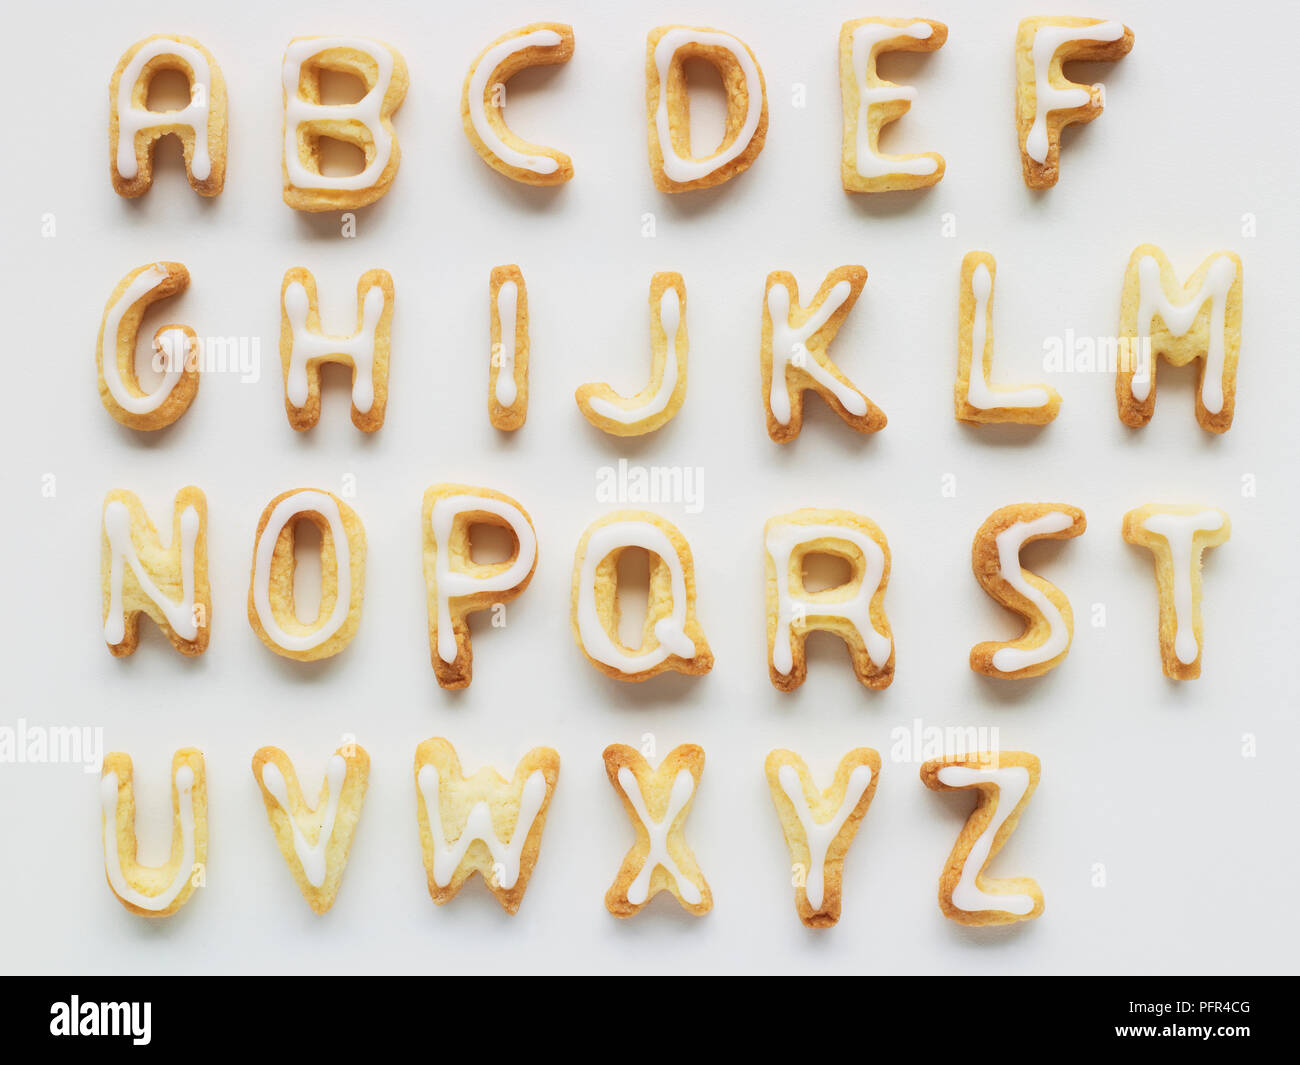 Biscuits en forme de lettre ou de biscuits alphabet Banque D'Images